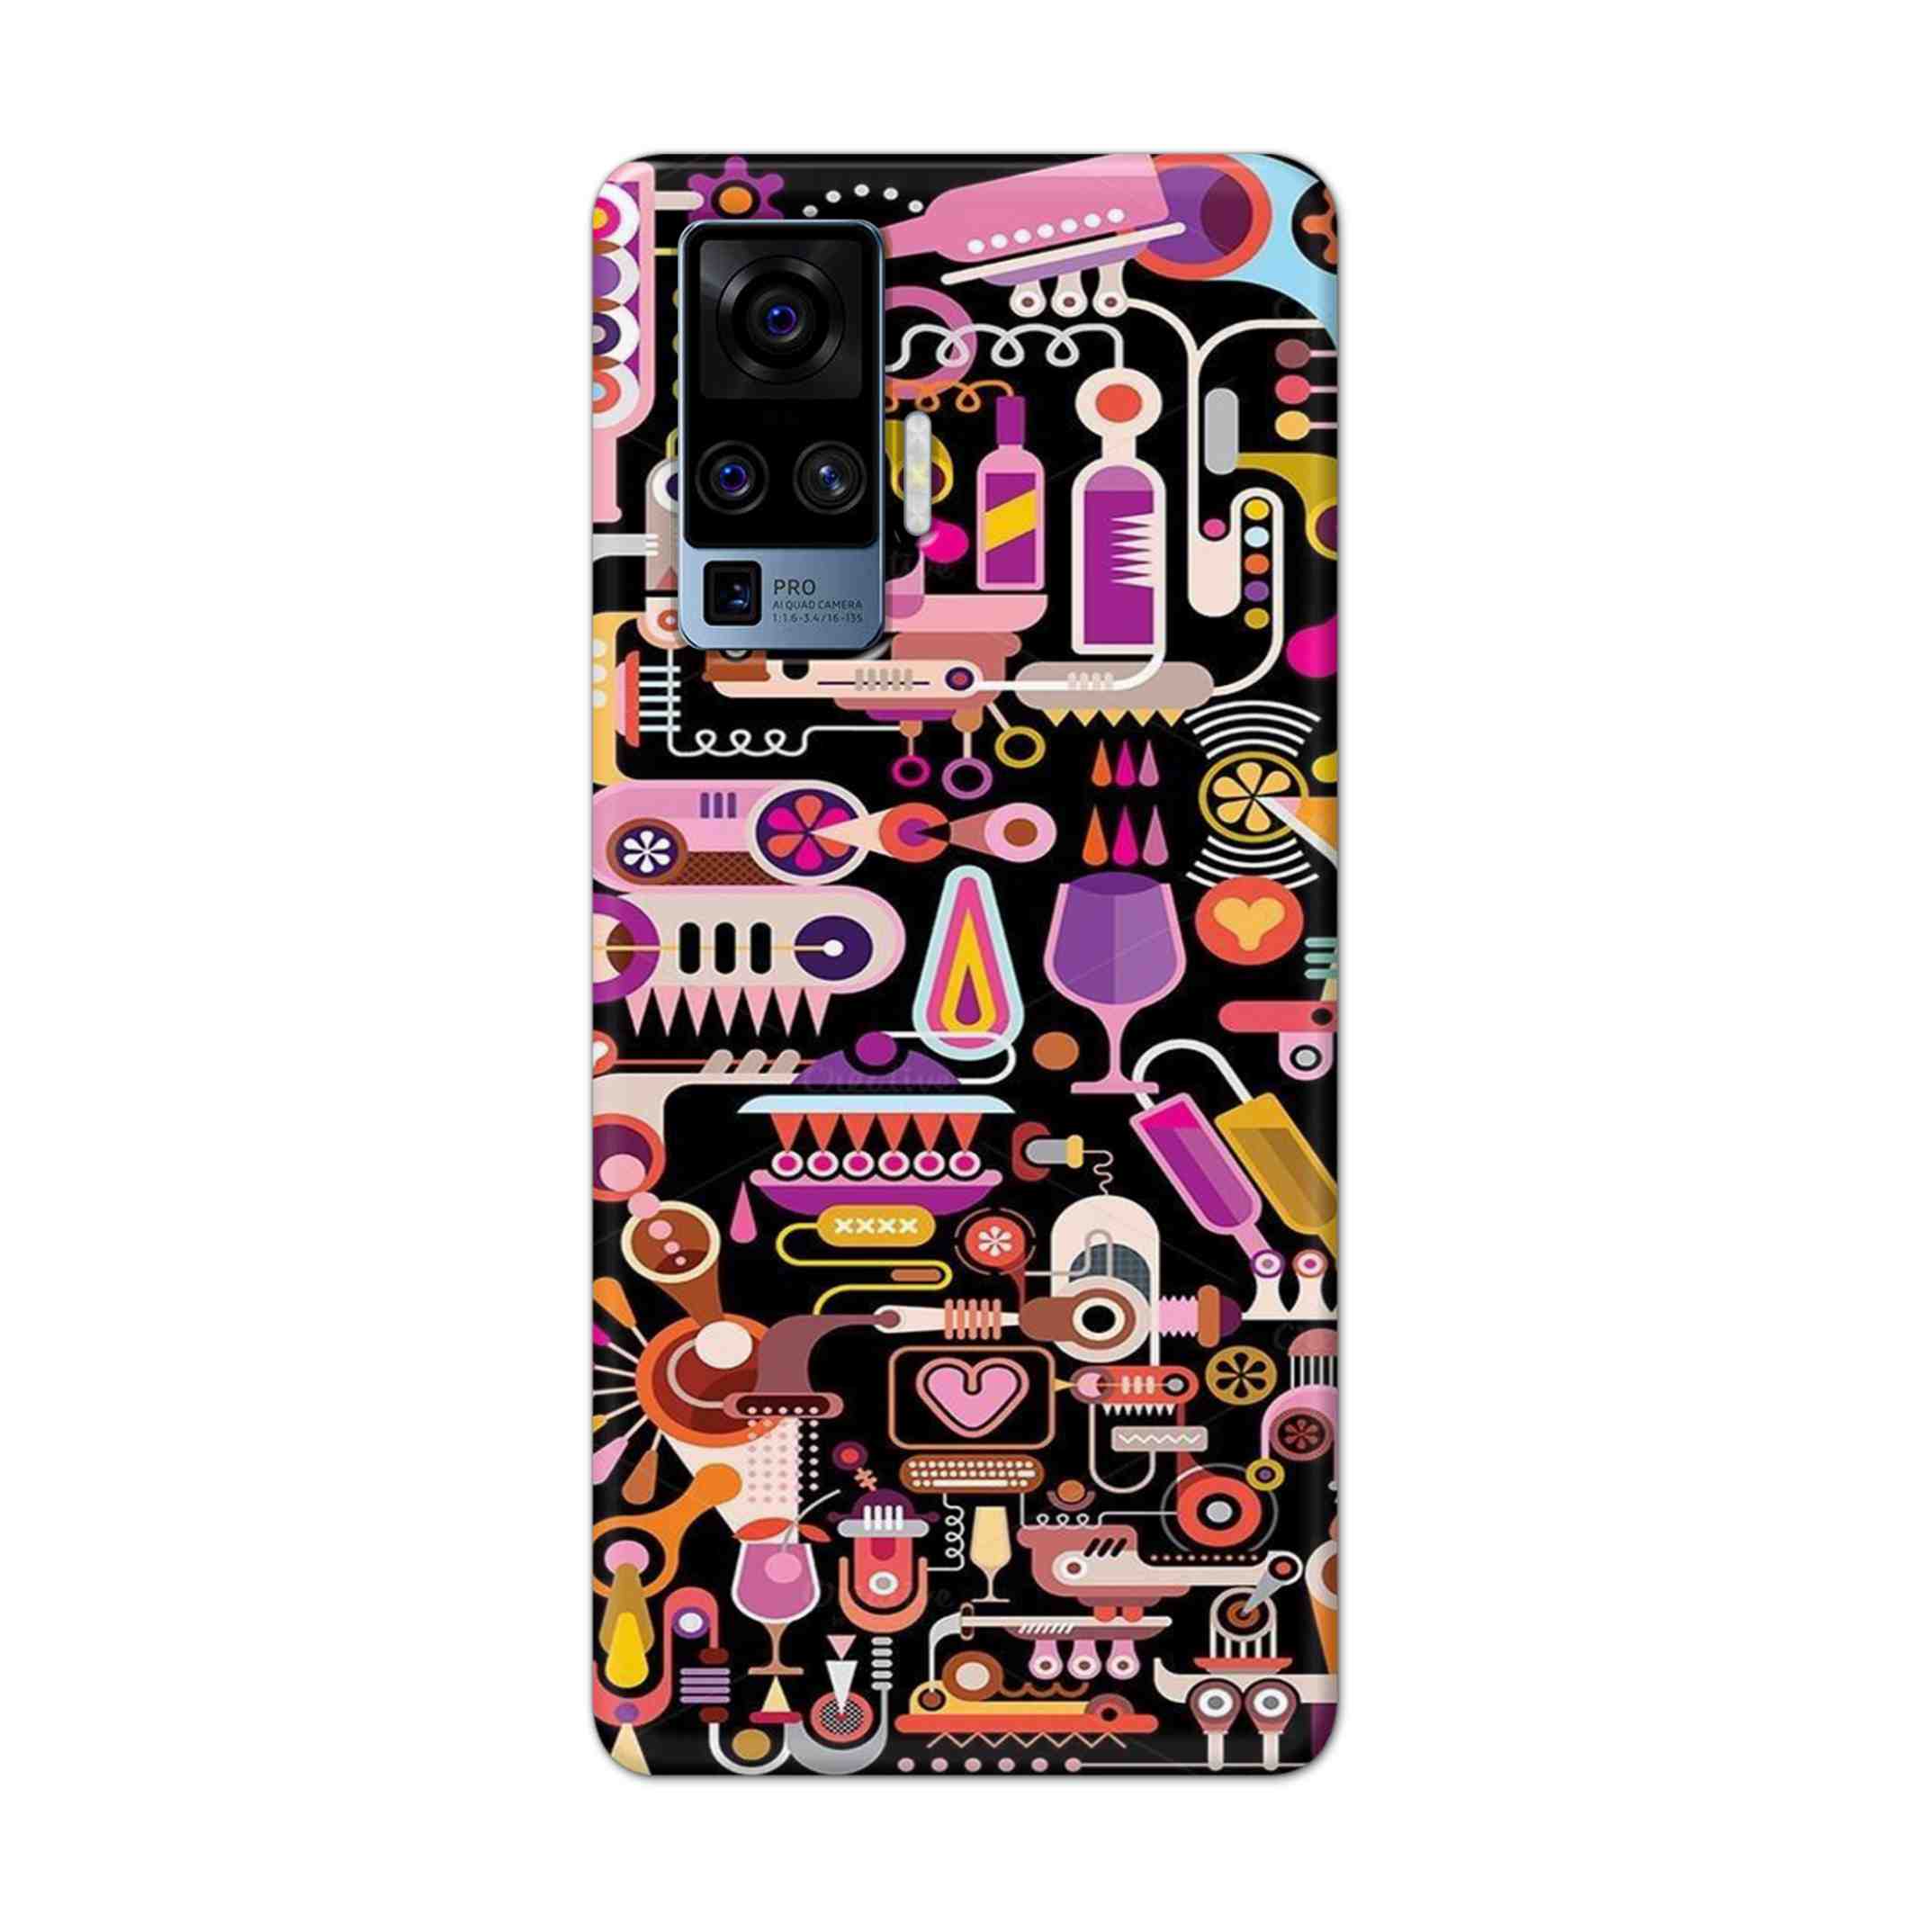 Buy Art Hard Back Mobile Phone Case/Cover For Vivo X50 Pro Online